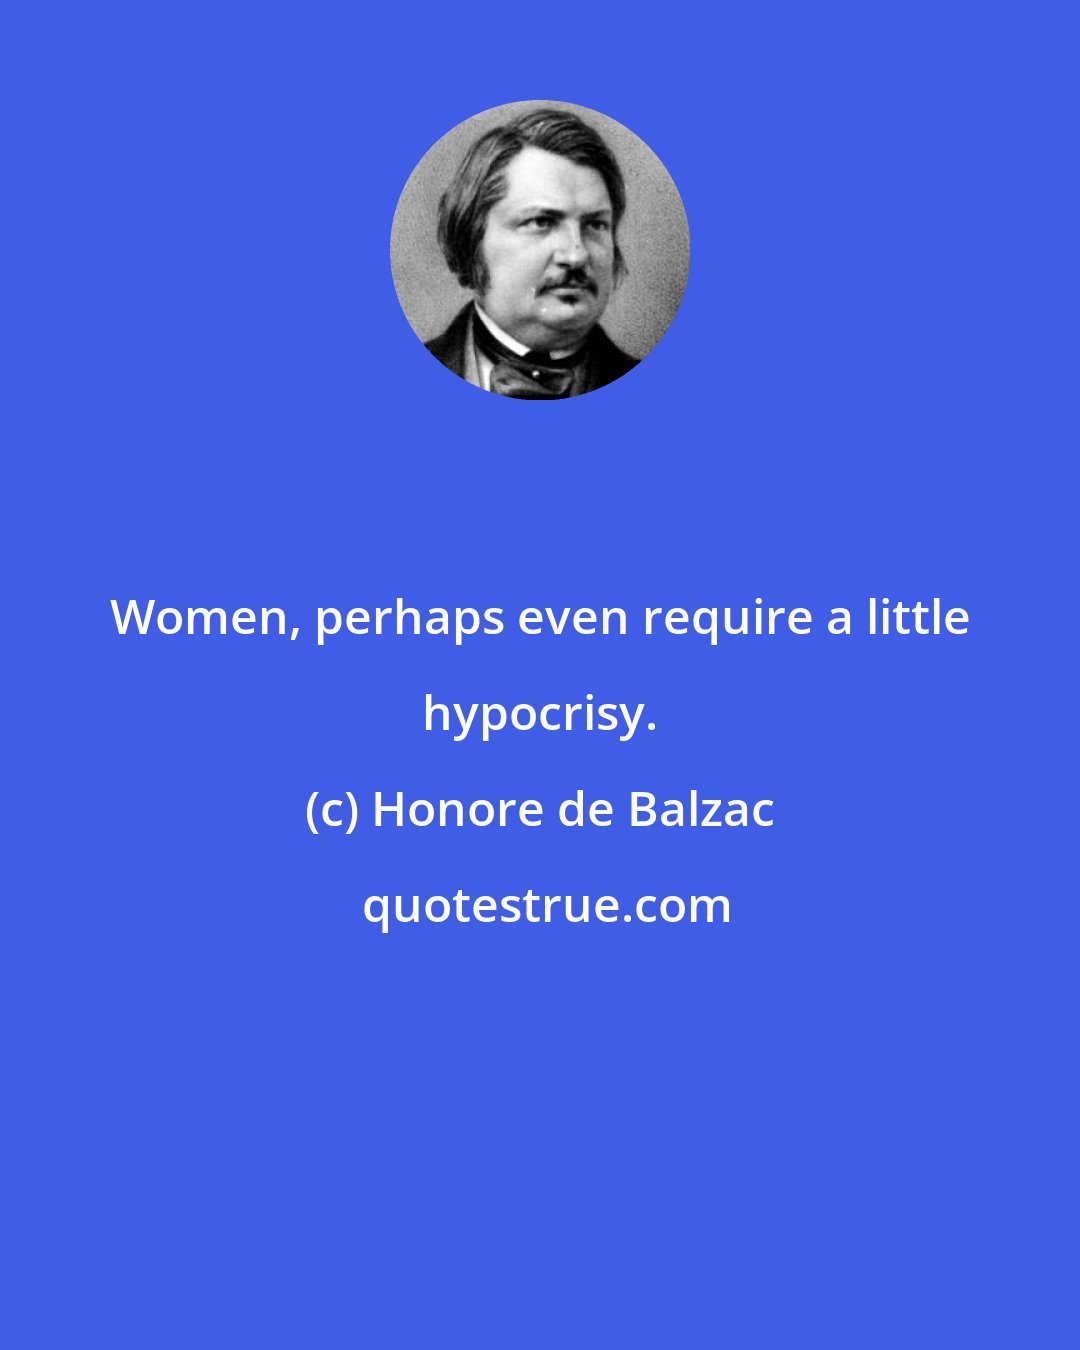 Honore de Balzac: Women, perhaps even require a little hypocrisy.